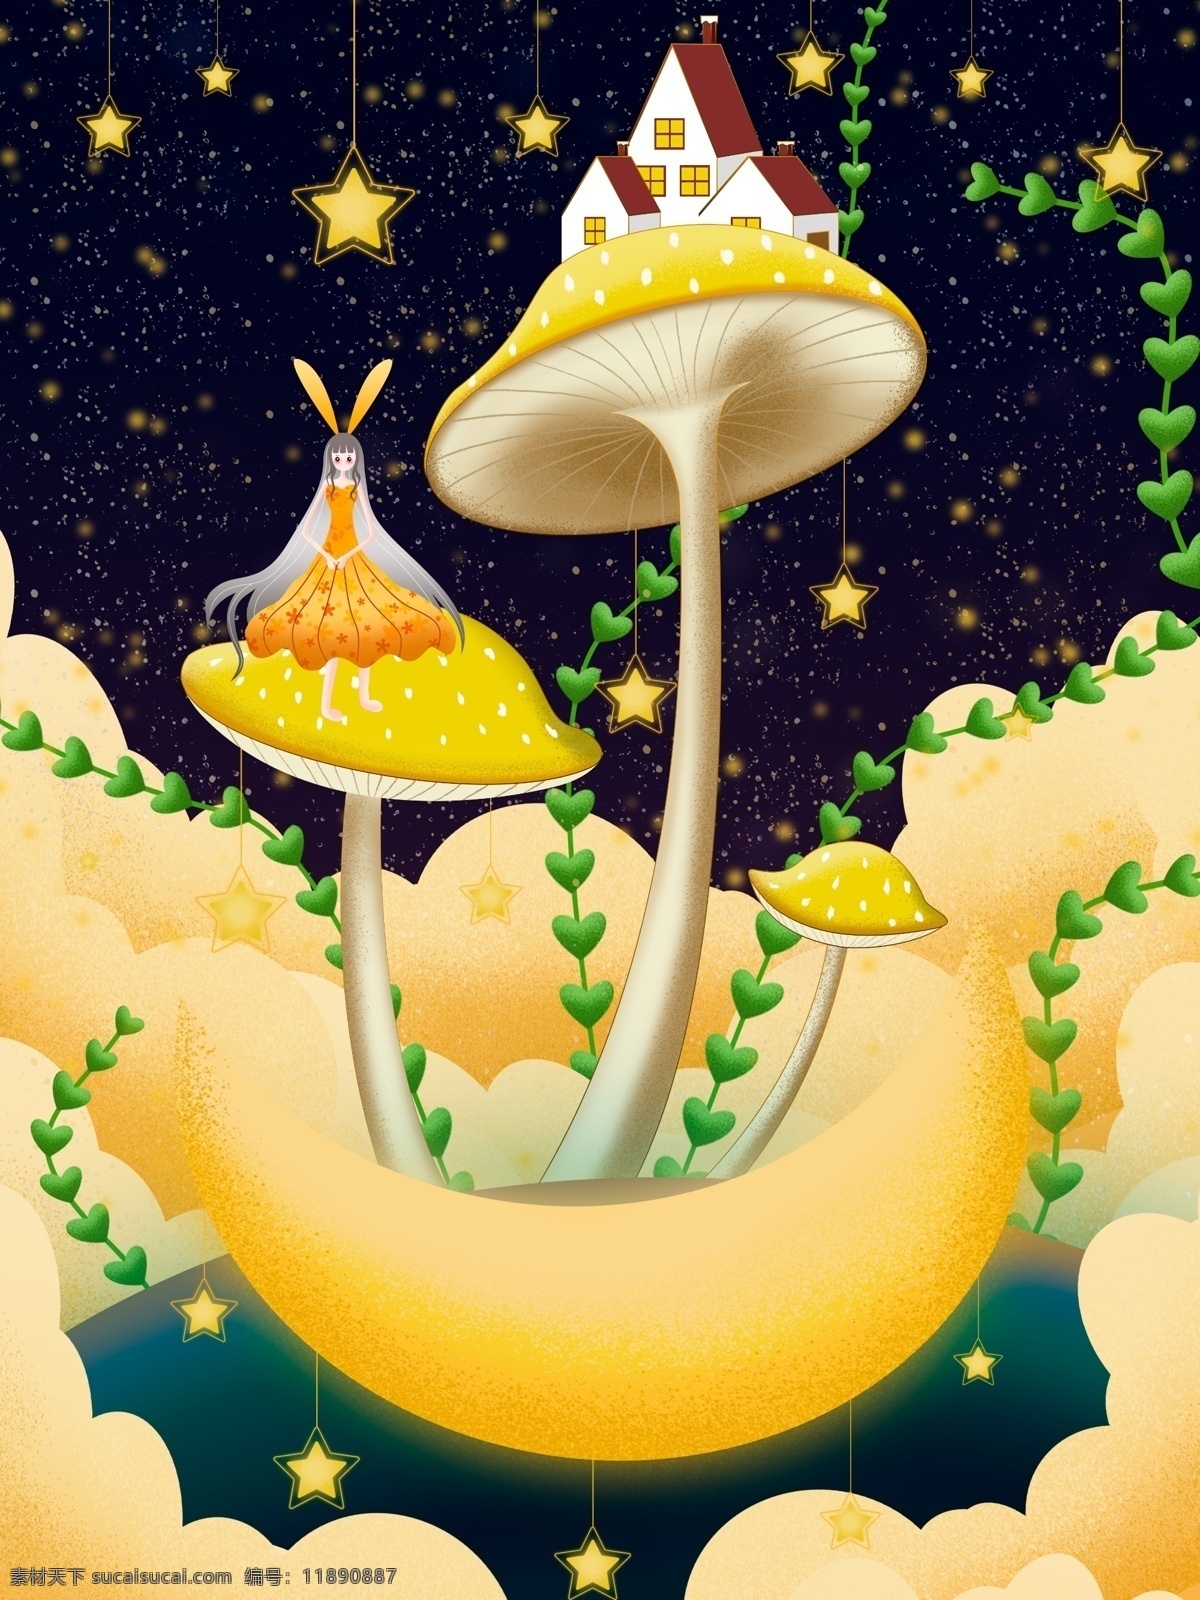 原创 情感 治愈 晚安 蘑菇 插画 星空 月亮 房子 星星 晚安你好 夜晚